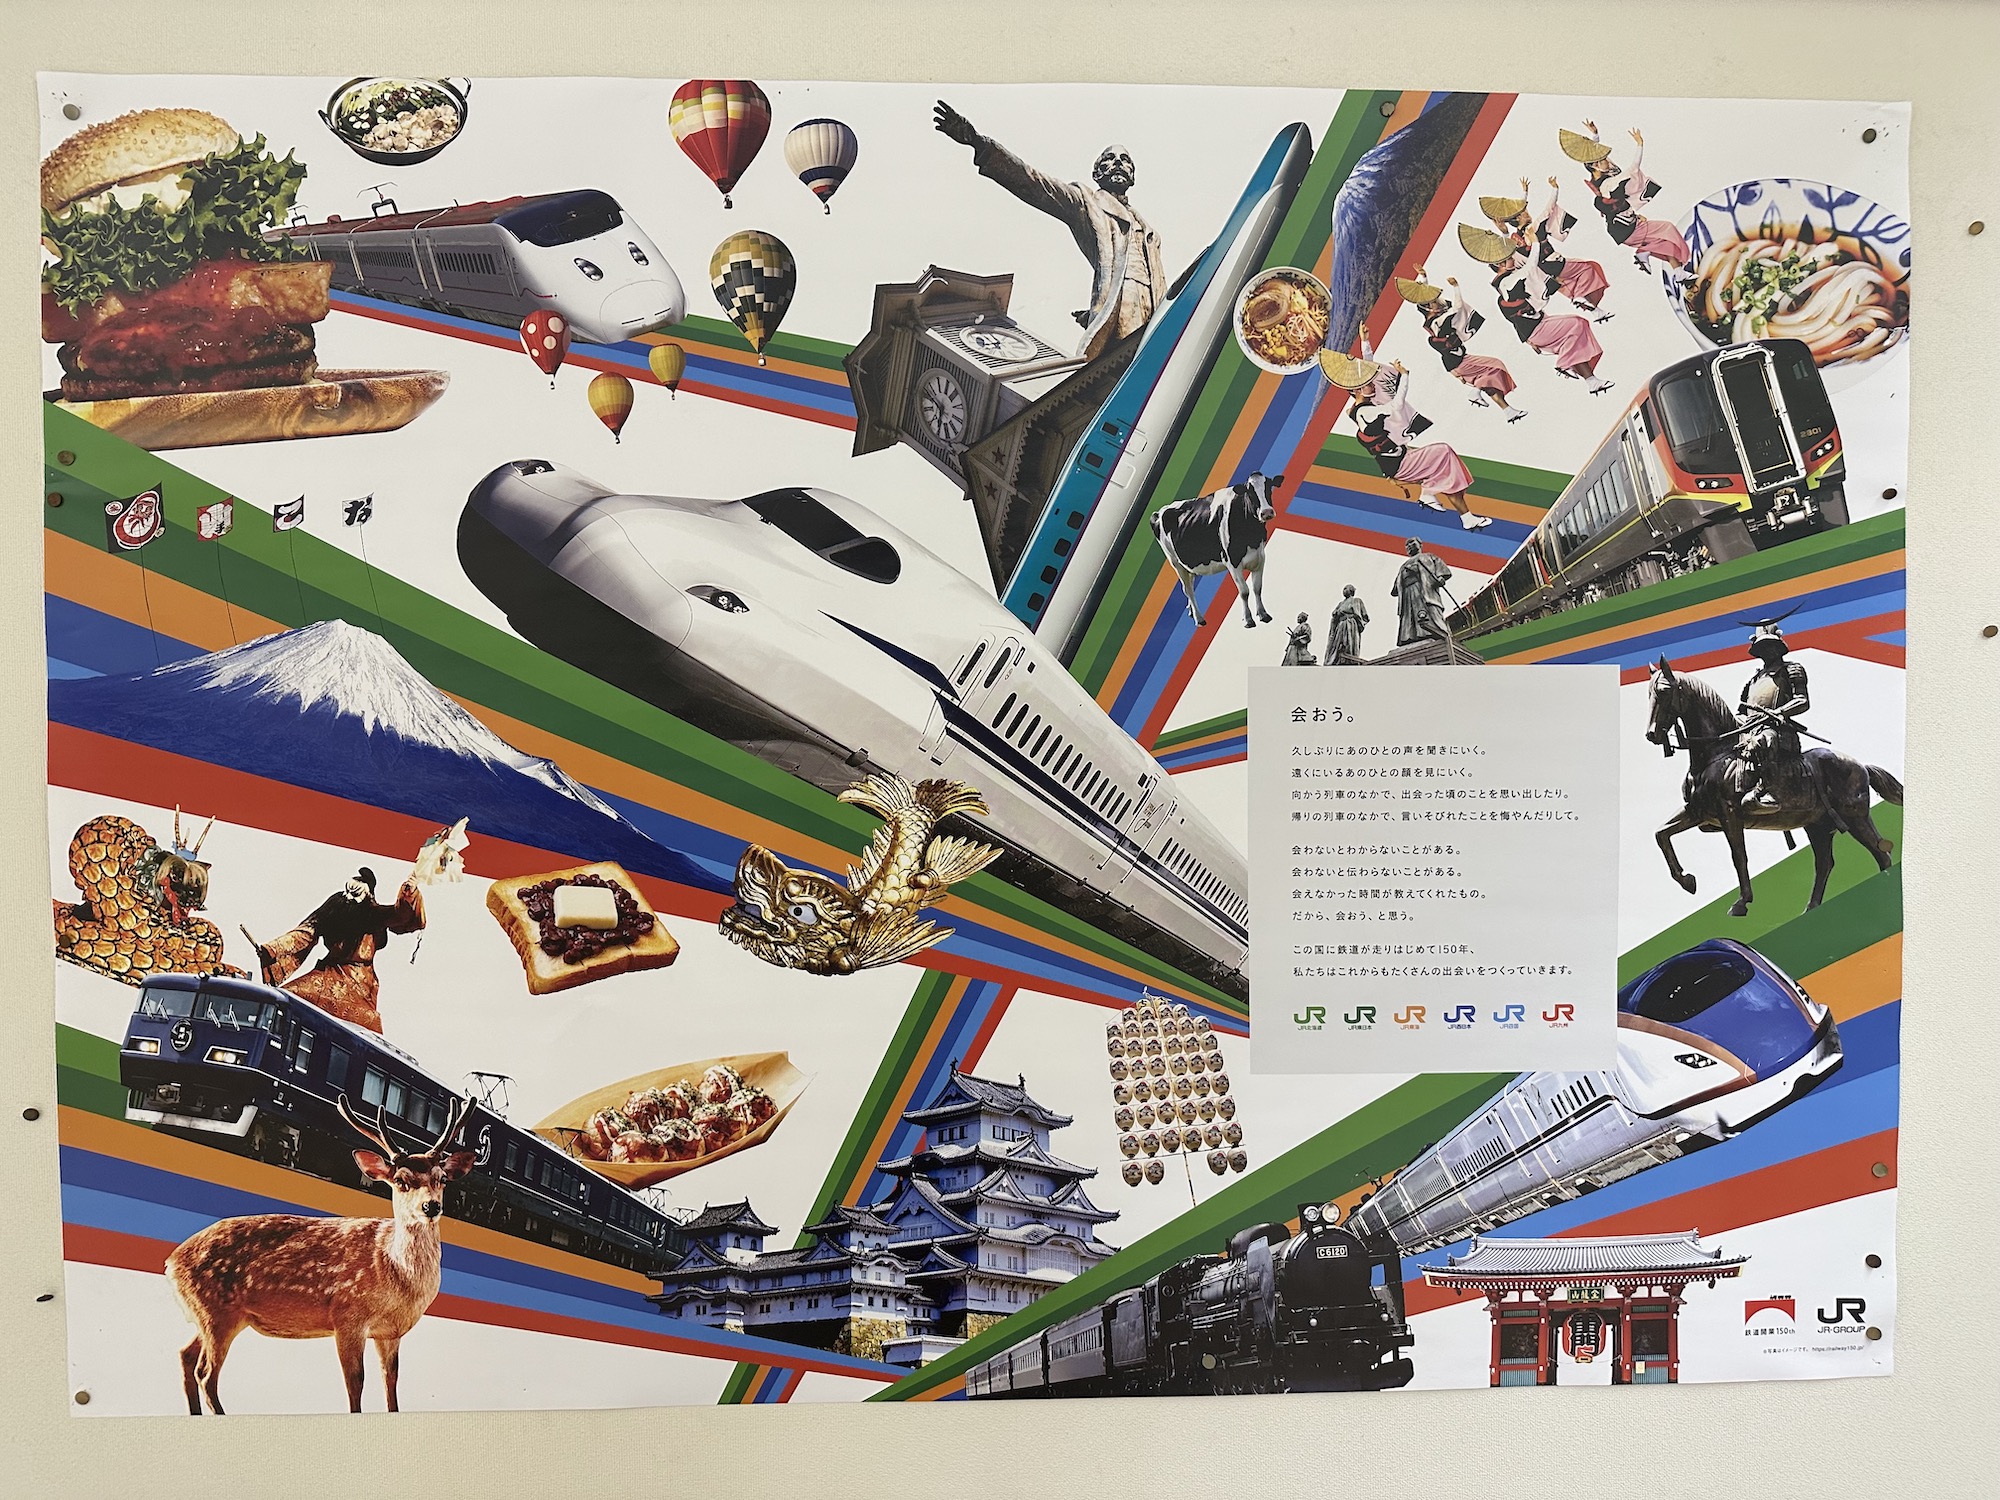 Advertisement for Japanese Shinkansen